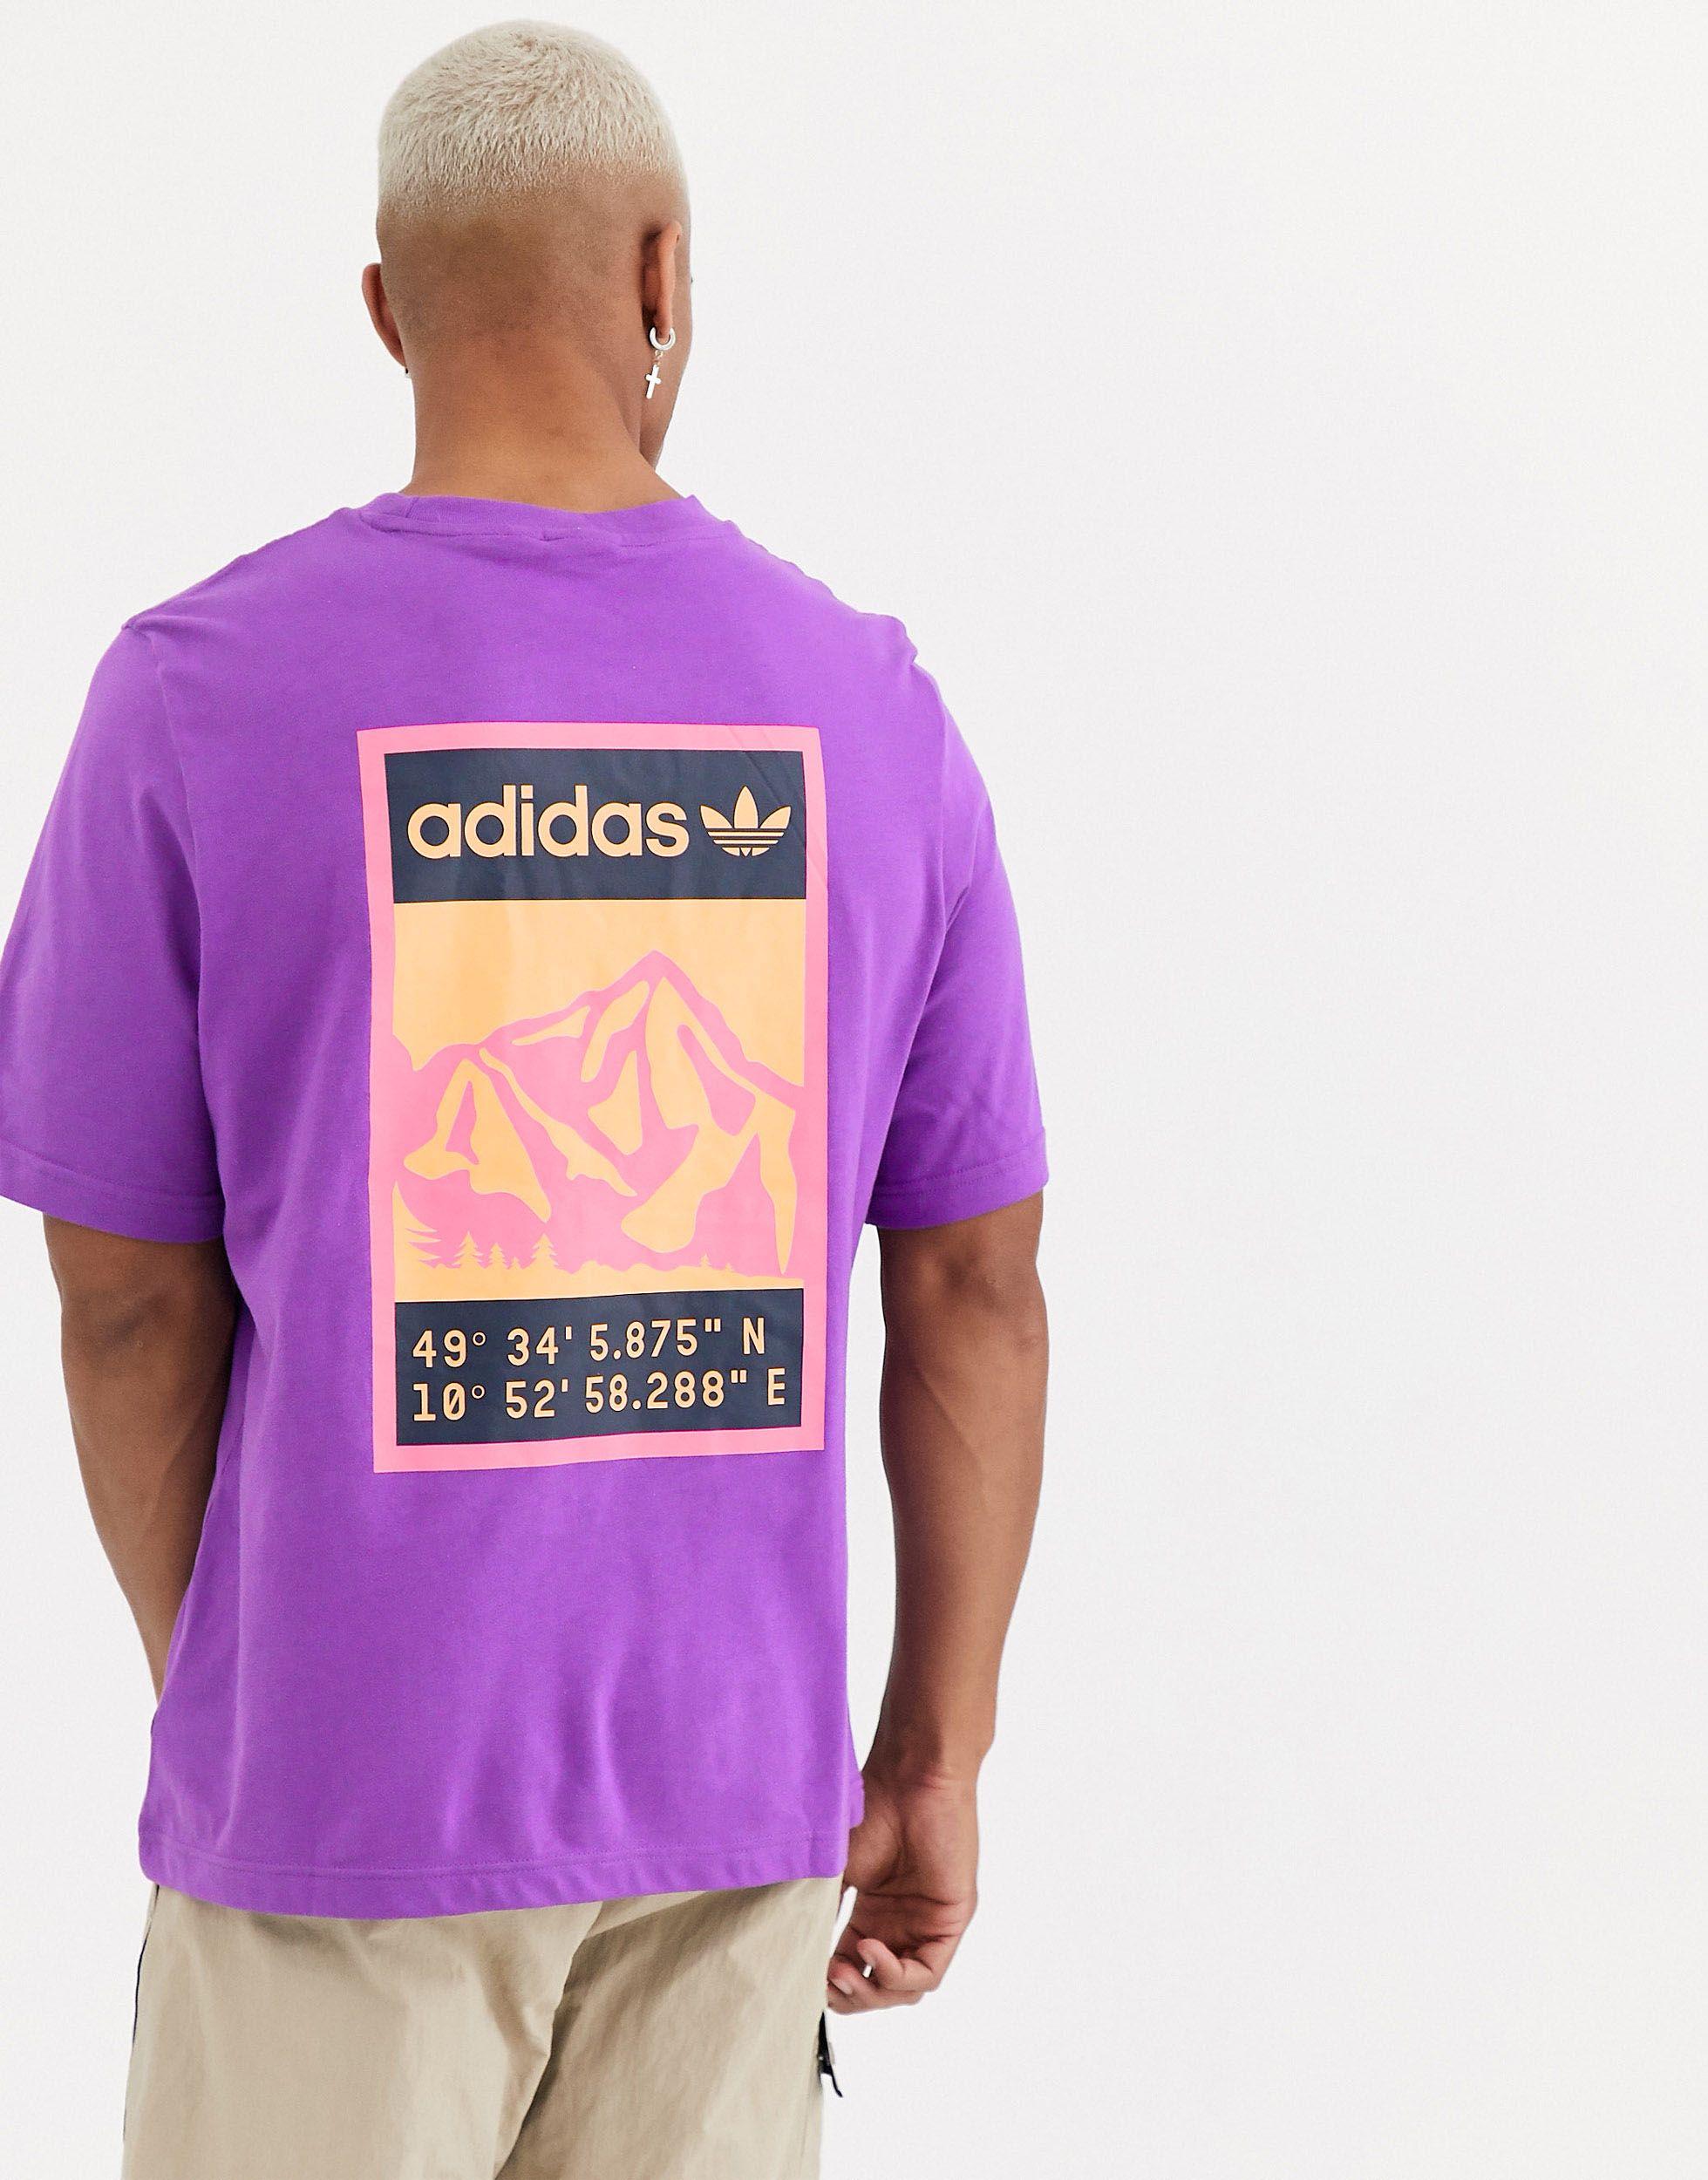 Adiplore - T-shirt avec imprimé au dos adidas Originals pour homme en  coloris Violet